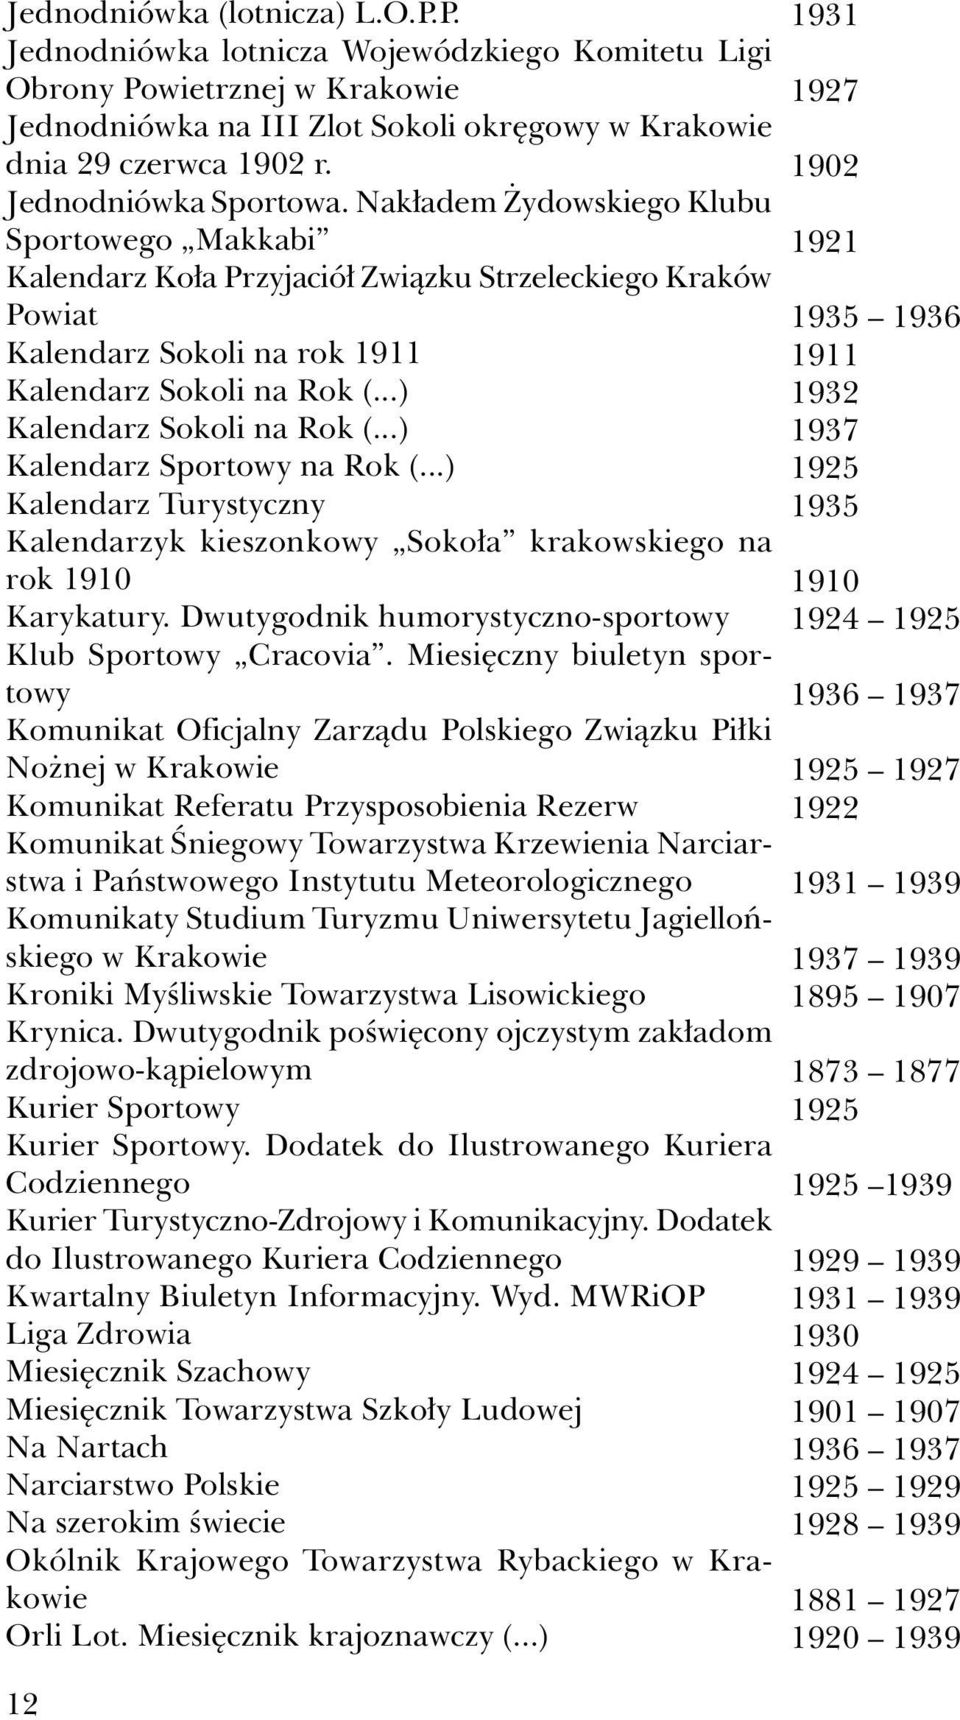 ..) Kalendarz Sokoli na Rok (...) Kalendarz Sportowy na Rok (...) Kalendarz Turystyczny Kalendarzyk kieszonkowy Sokoła krakowskiego na rok 1910 Karykatury.